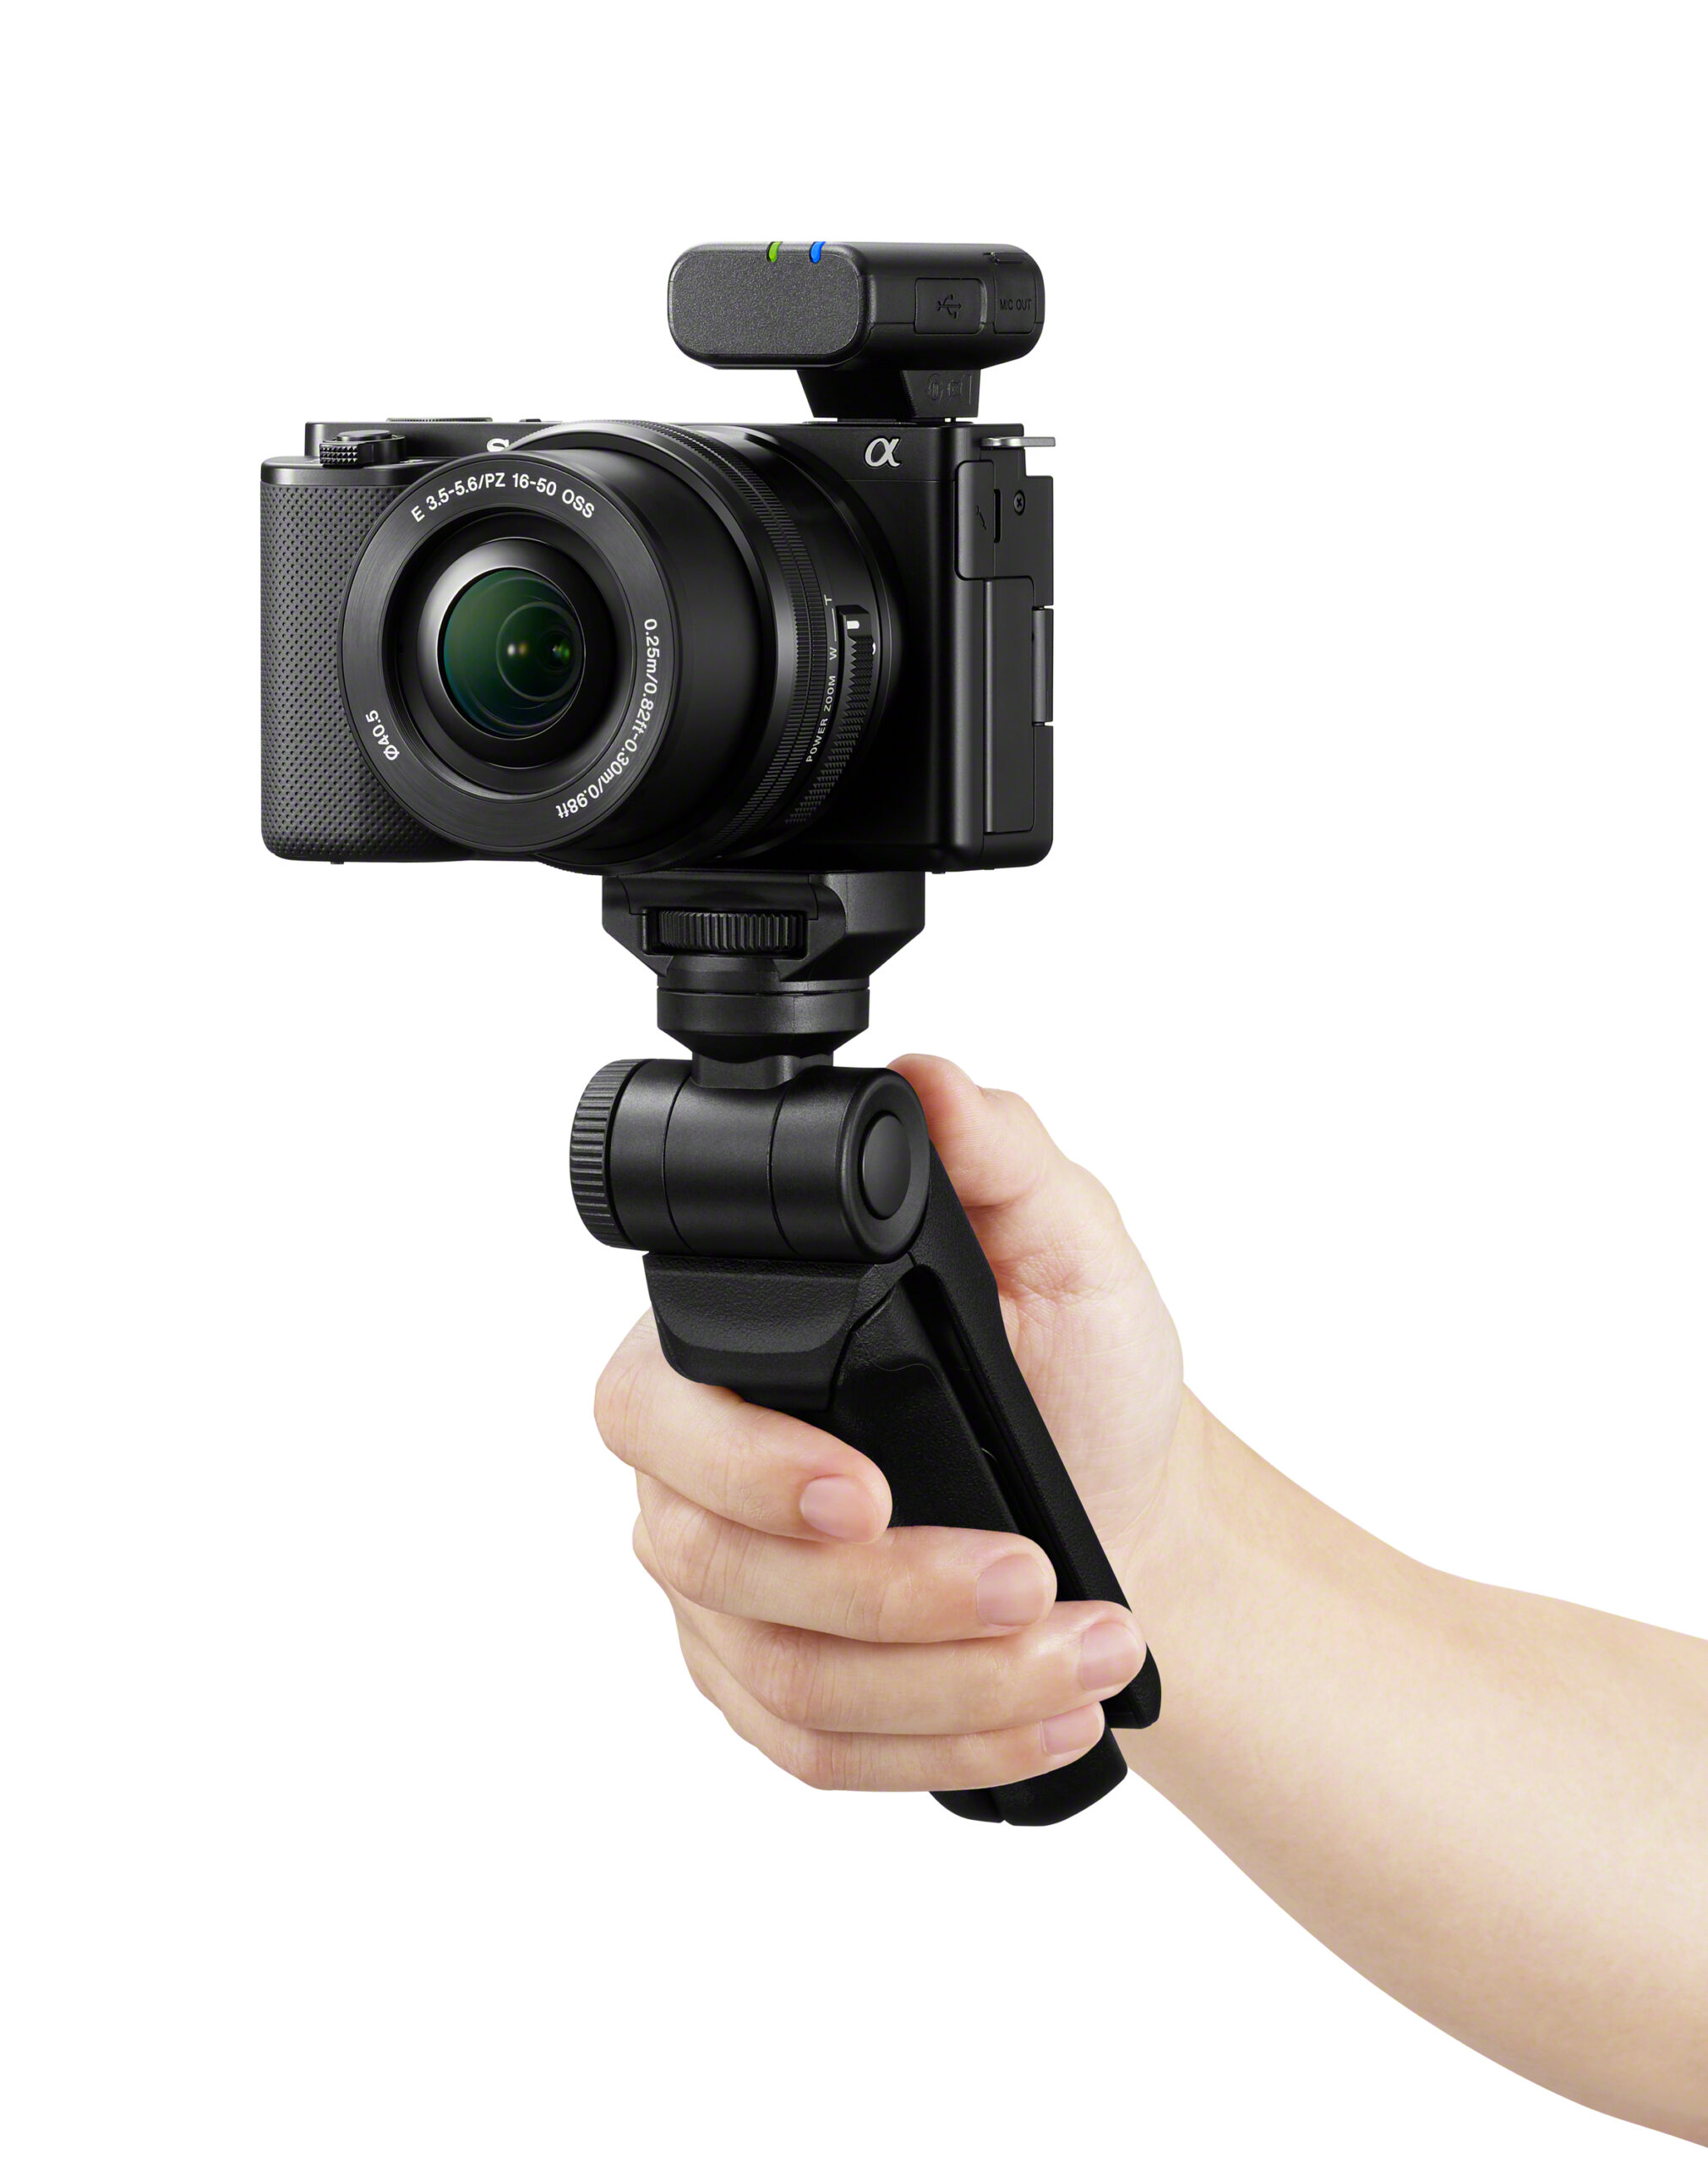 Sony anunció hoy la primera cámara de lentes intercambiables para vloggers de la serie Alpha, la nueva ZV-E10. Diseñada para este segmento